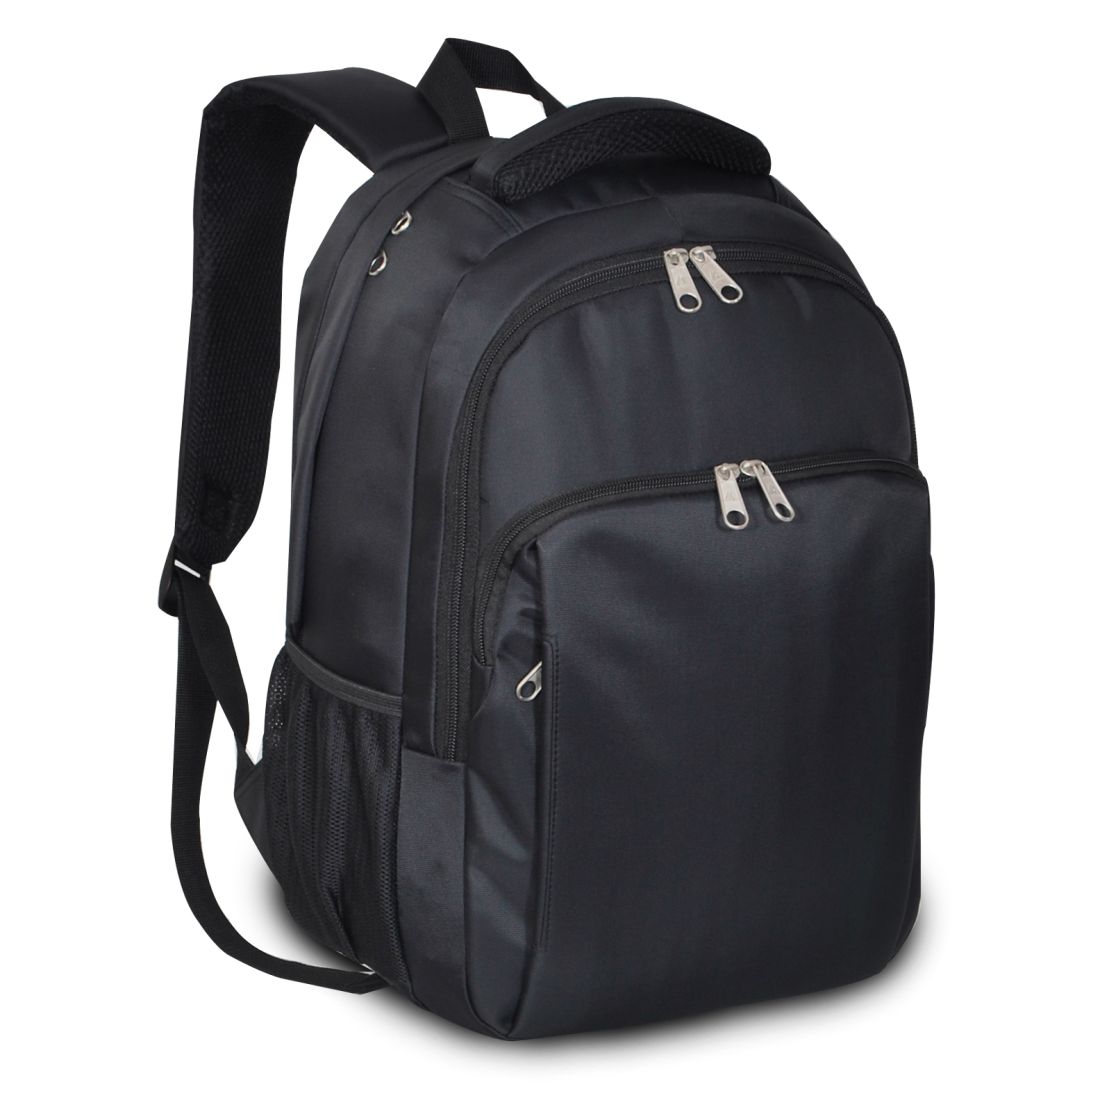 Everest City Traveler Backpack